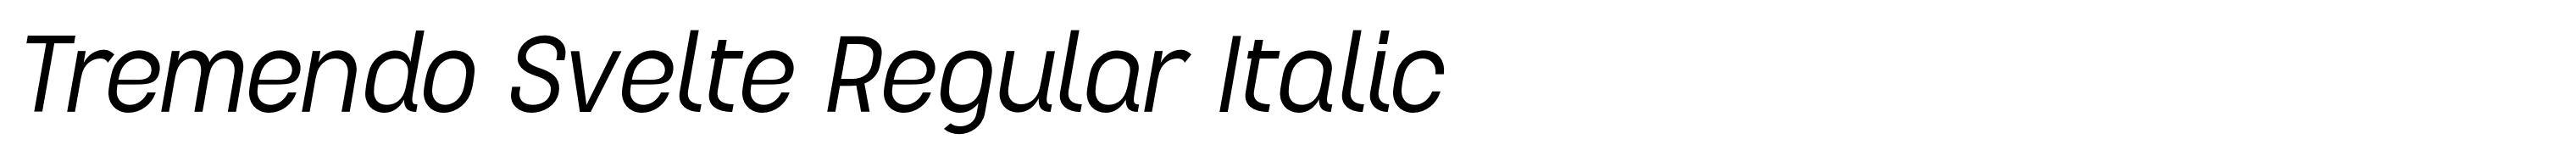 Tremendo Svelte Regular Italic